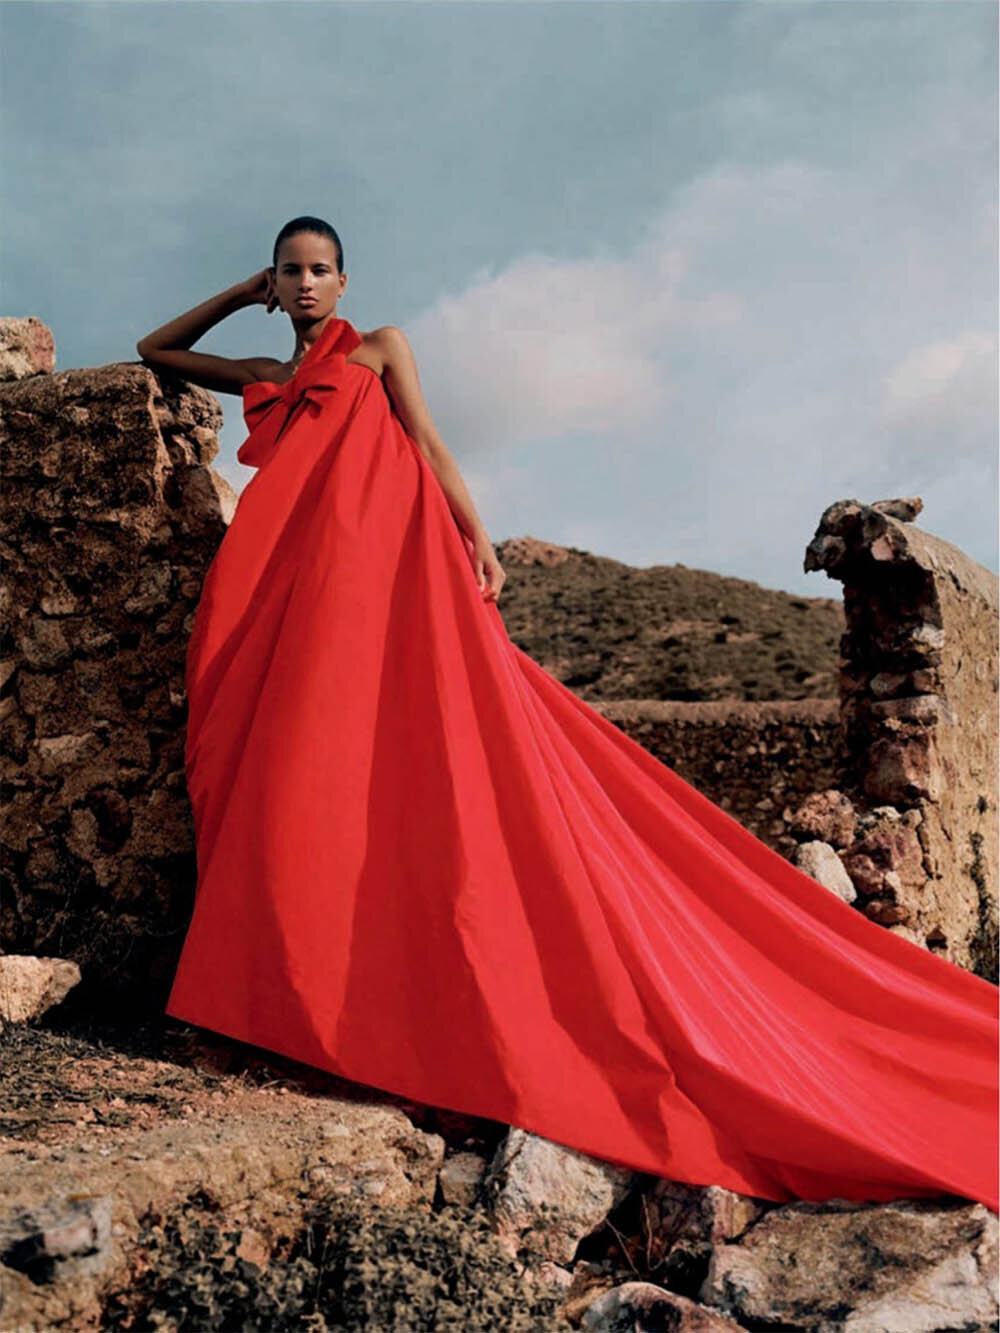 Litza Veloz by Anya Holdstock for Vogue Spain February 2020  (6).jpg